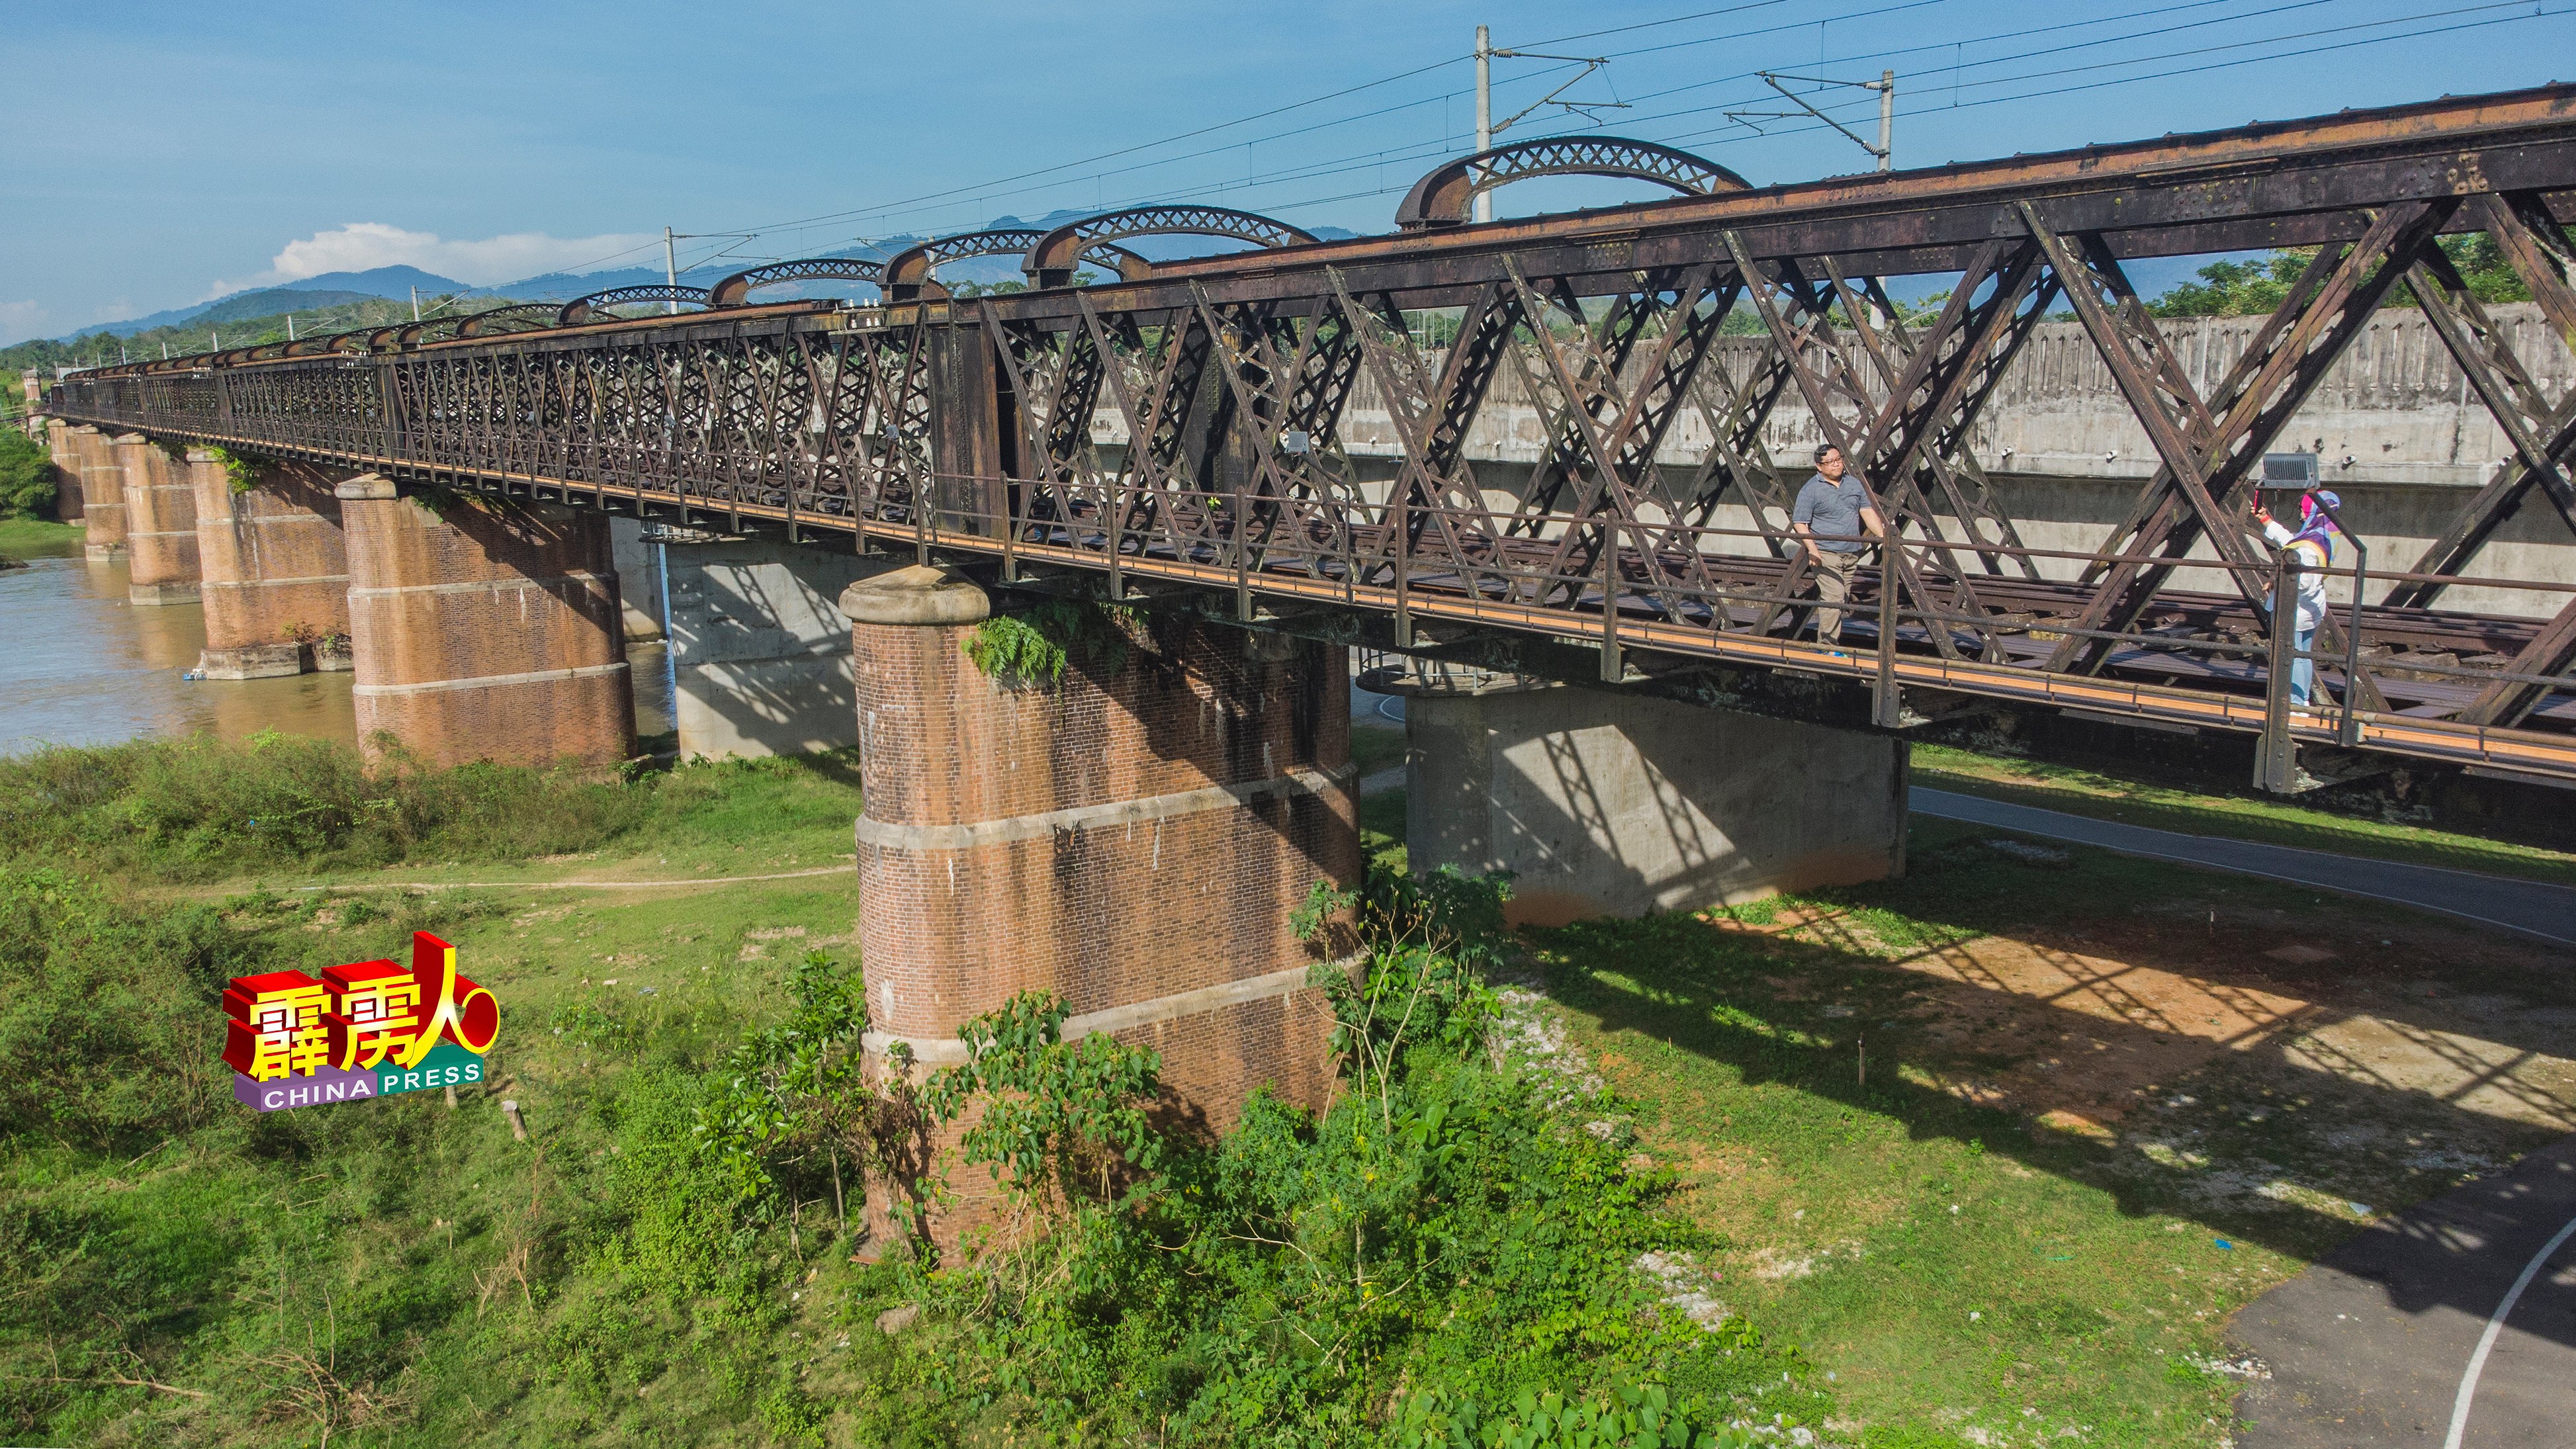 江沙宁罗维多利亚火车桥已有122年历史。